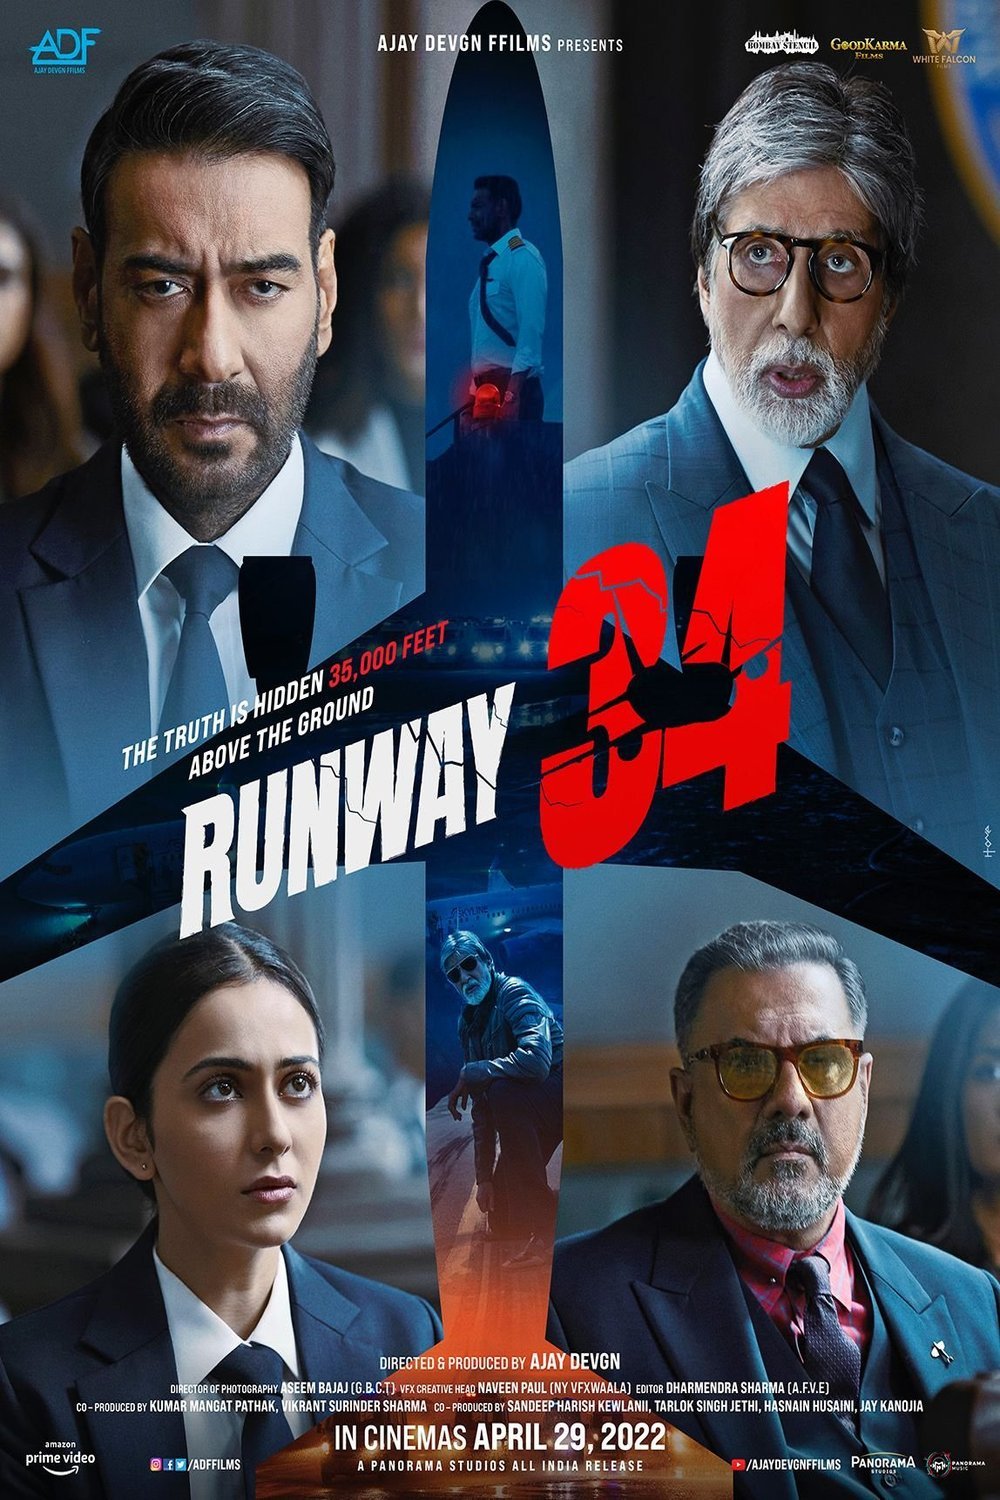 Hindi poster of the movie Runway 34